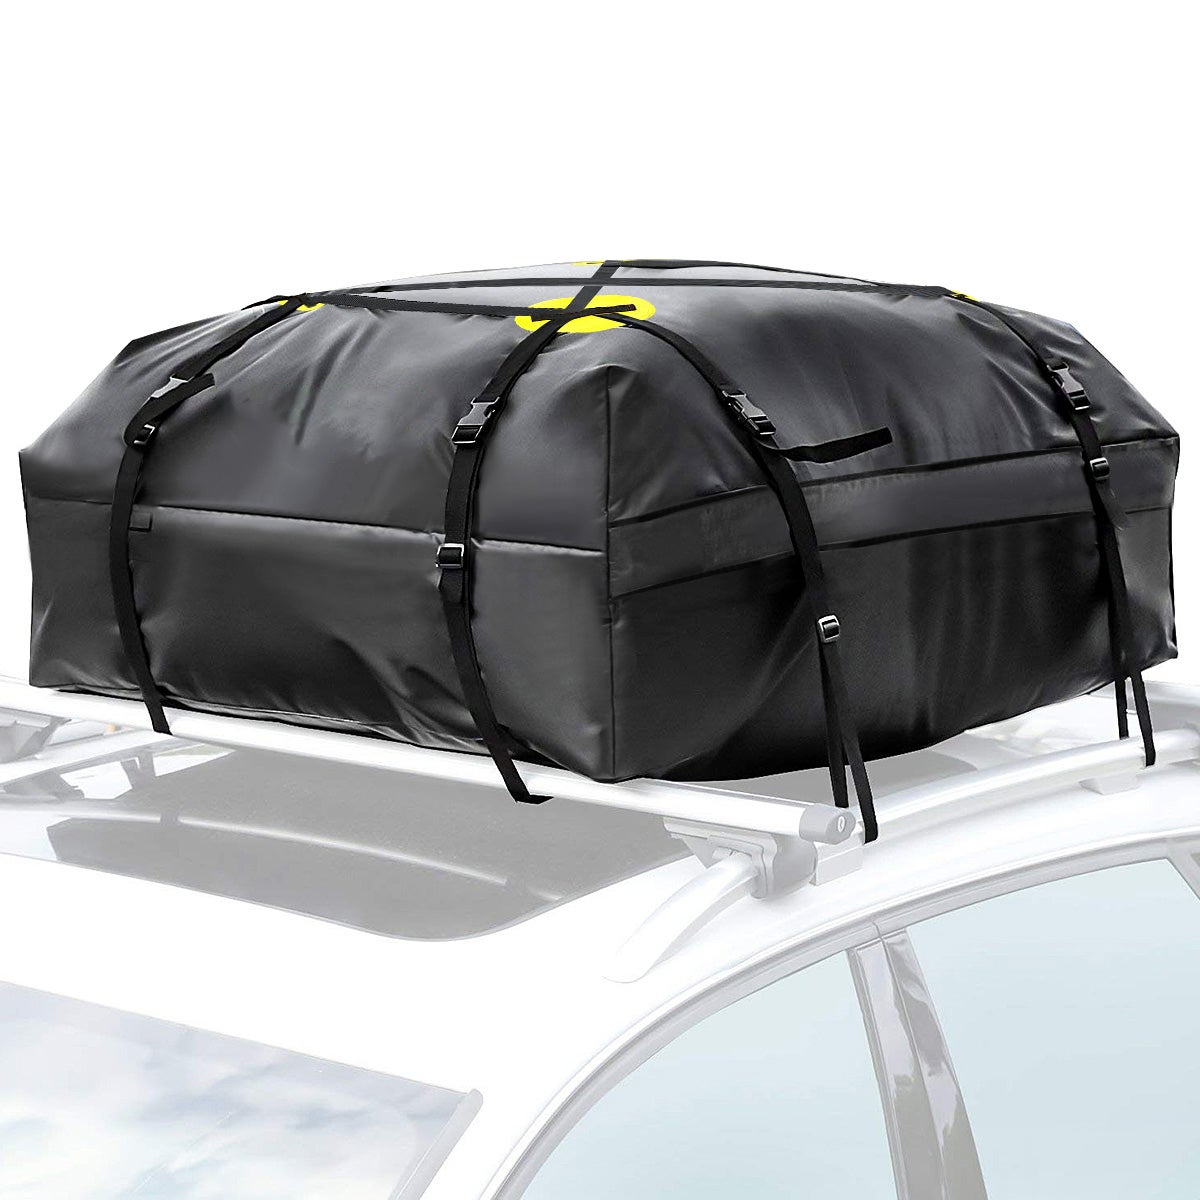 Exxen Heavy Duty Sac pour porte-bagages de toit de voiture (425